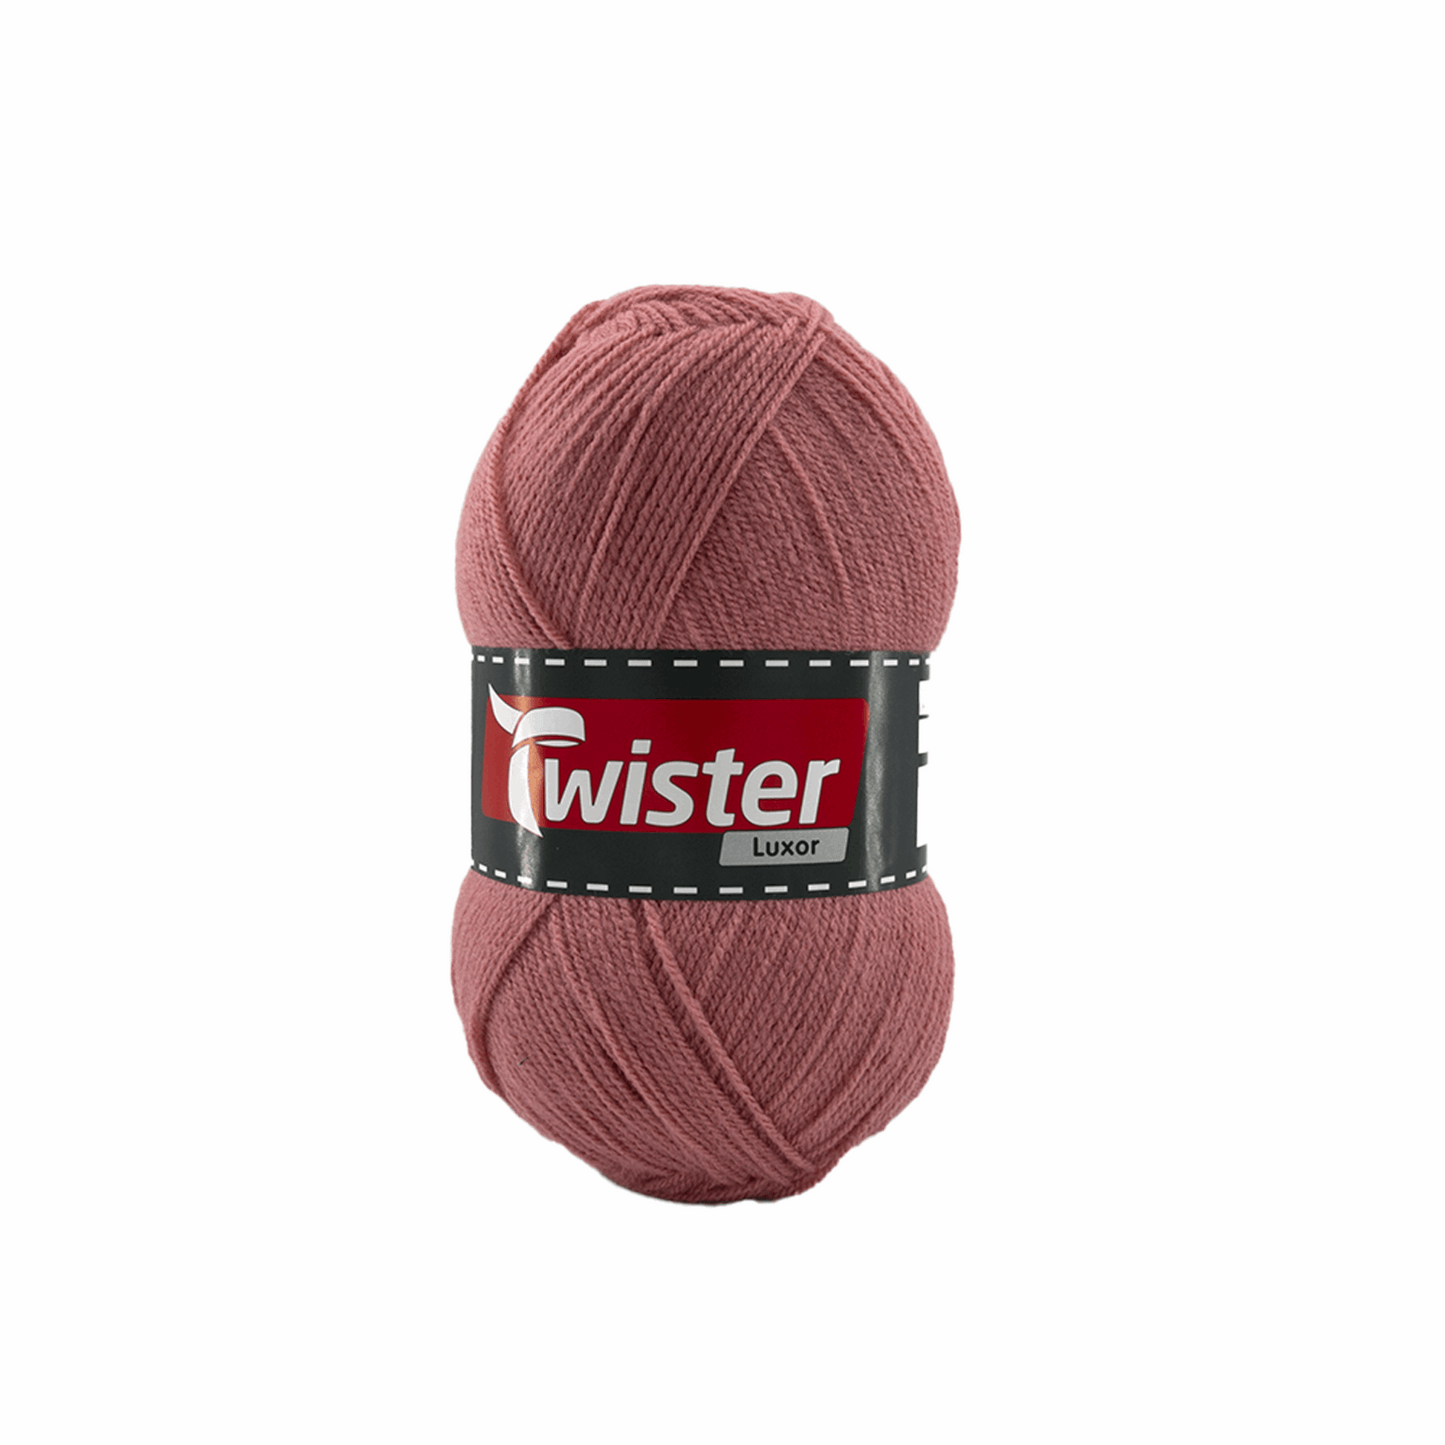 Twister Luxor, 98317, Farbe altrosa 32